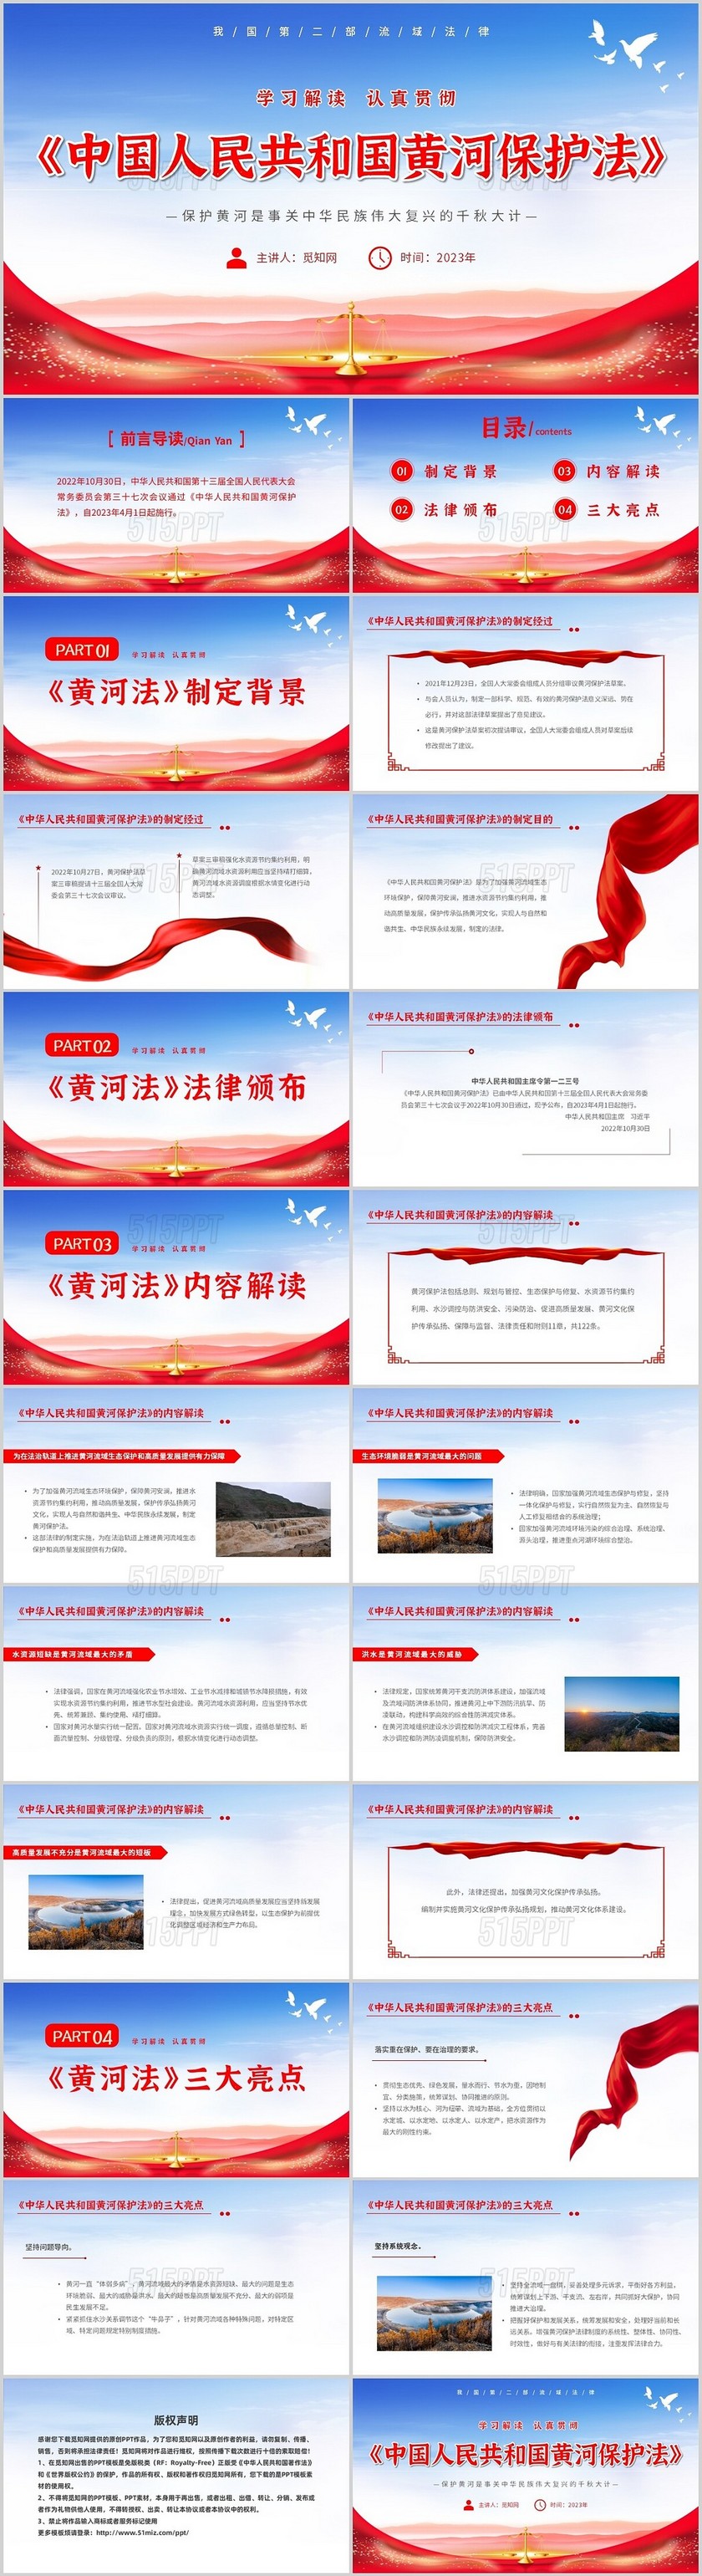 红色大气简约中国人民共和国黄河保护法主题PPT模板